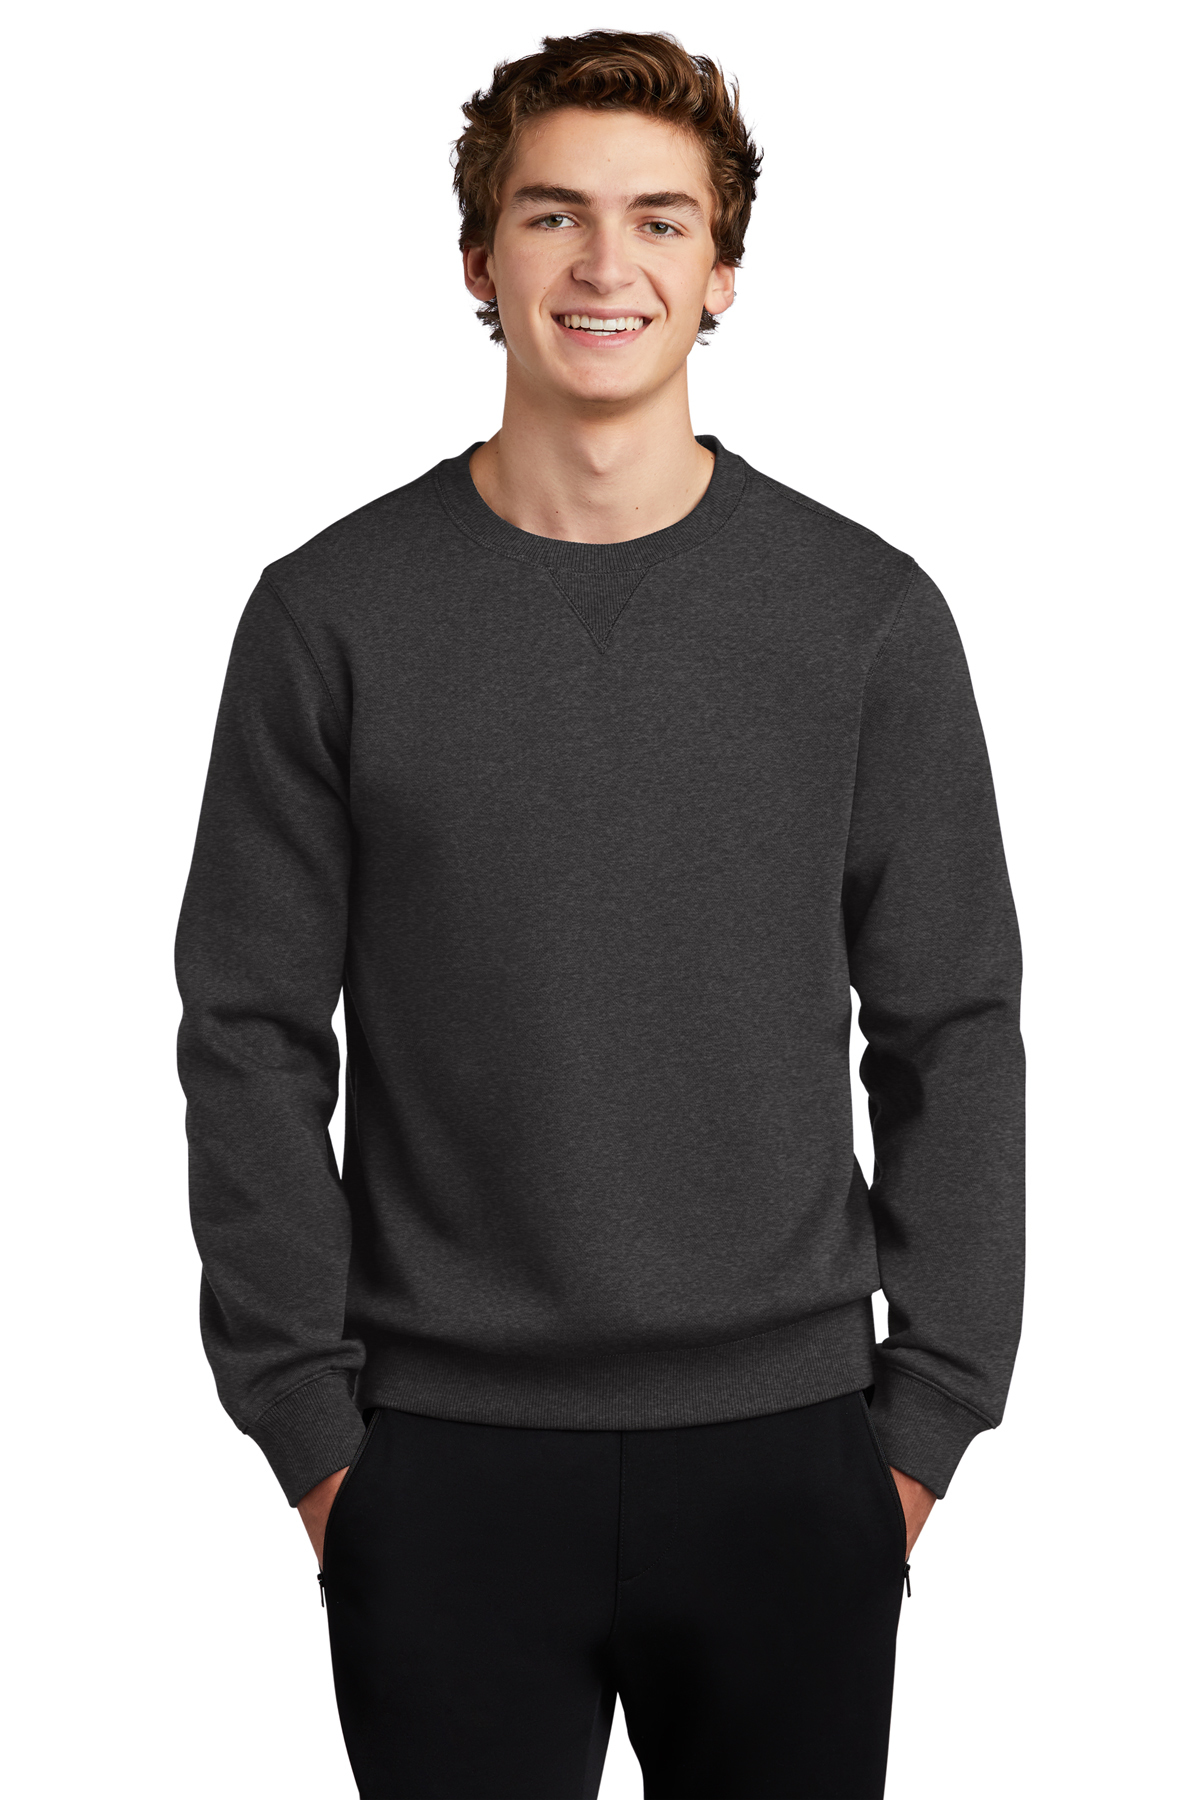 Sport-Tek Crewneck Sweatshirt | Product | Company Casuals